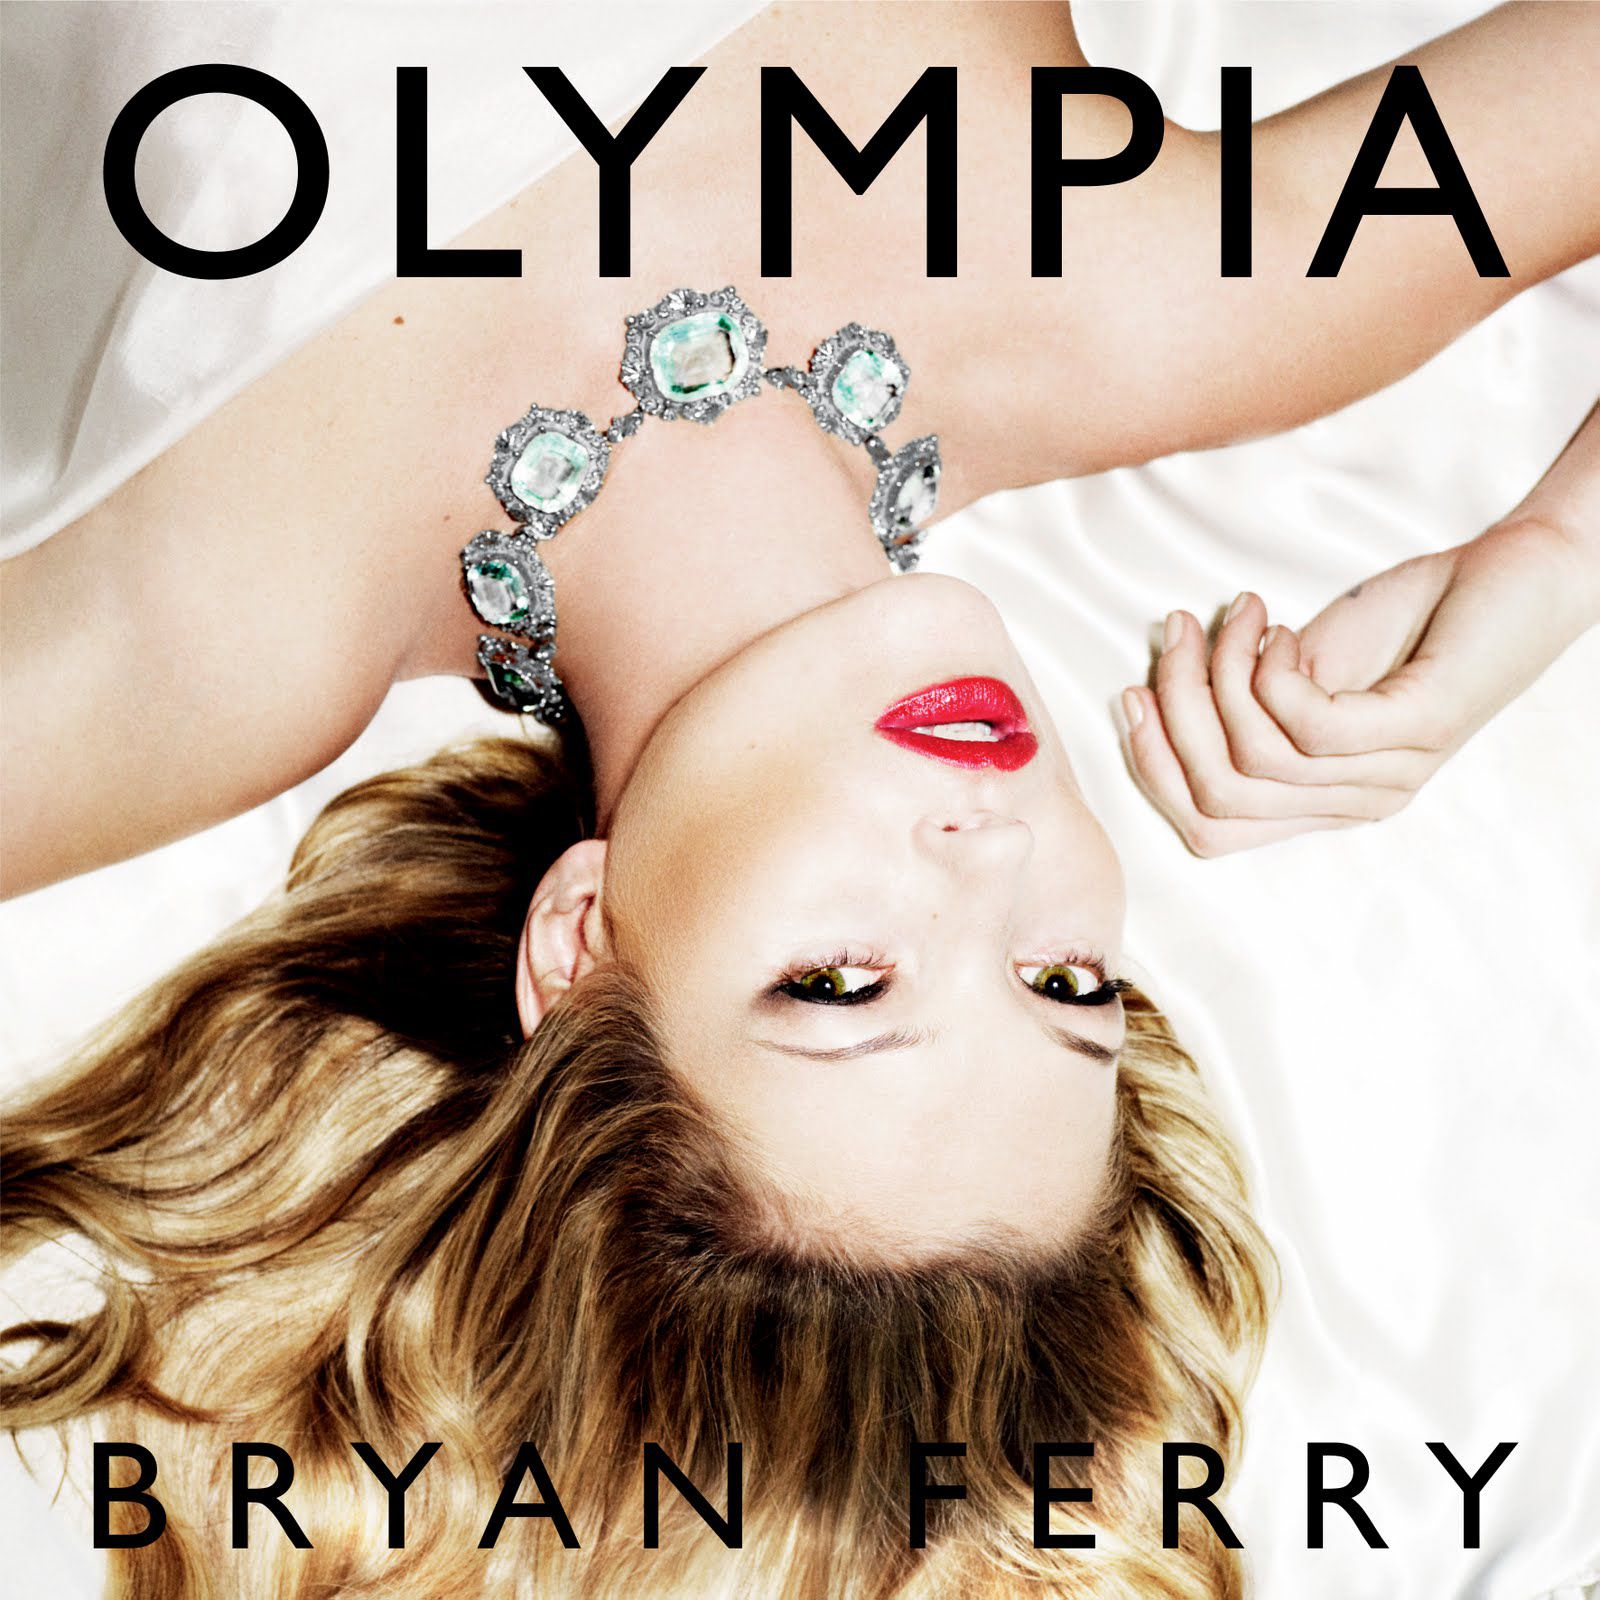 Bryan Ferry. Bryan Ferry "Olympia". Bryan Ferry "Olympia (CD)". Bryan Ferry Avonmore 2014.